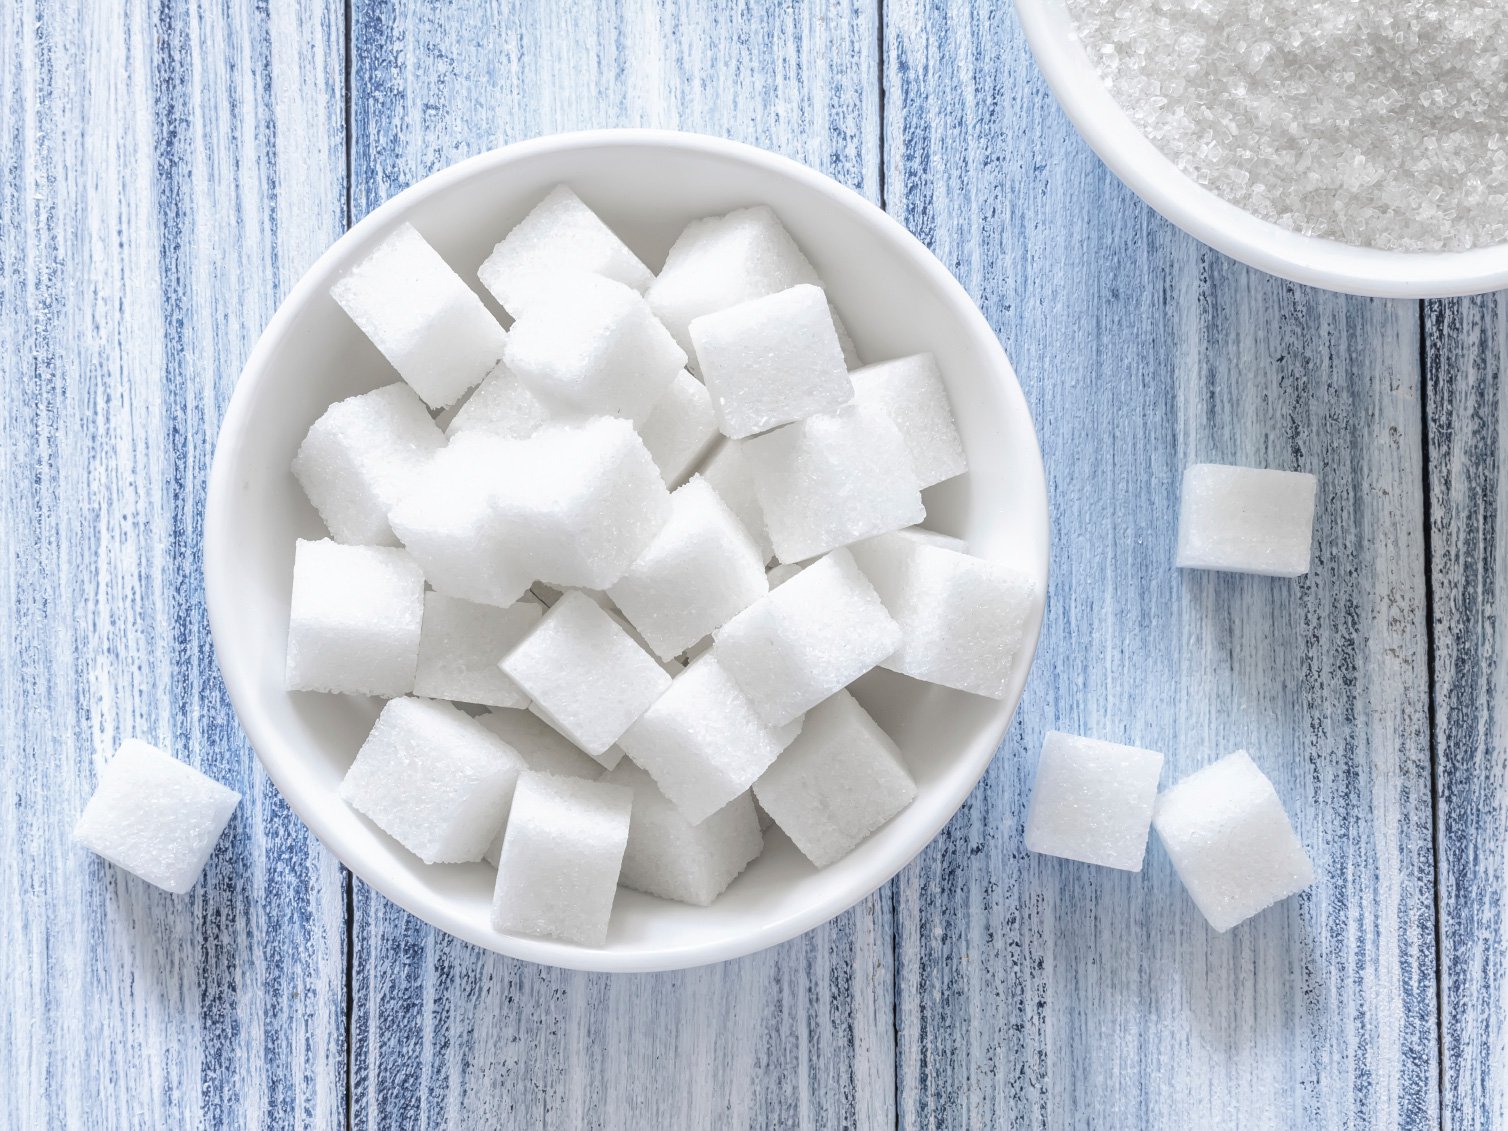 از بین بردن بوی غذا با شکر